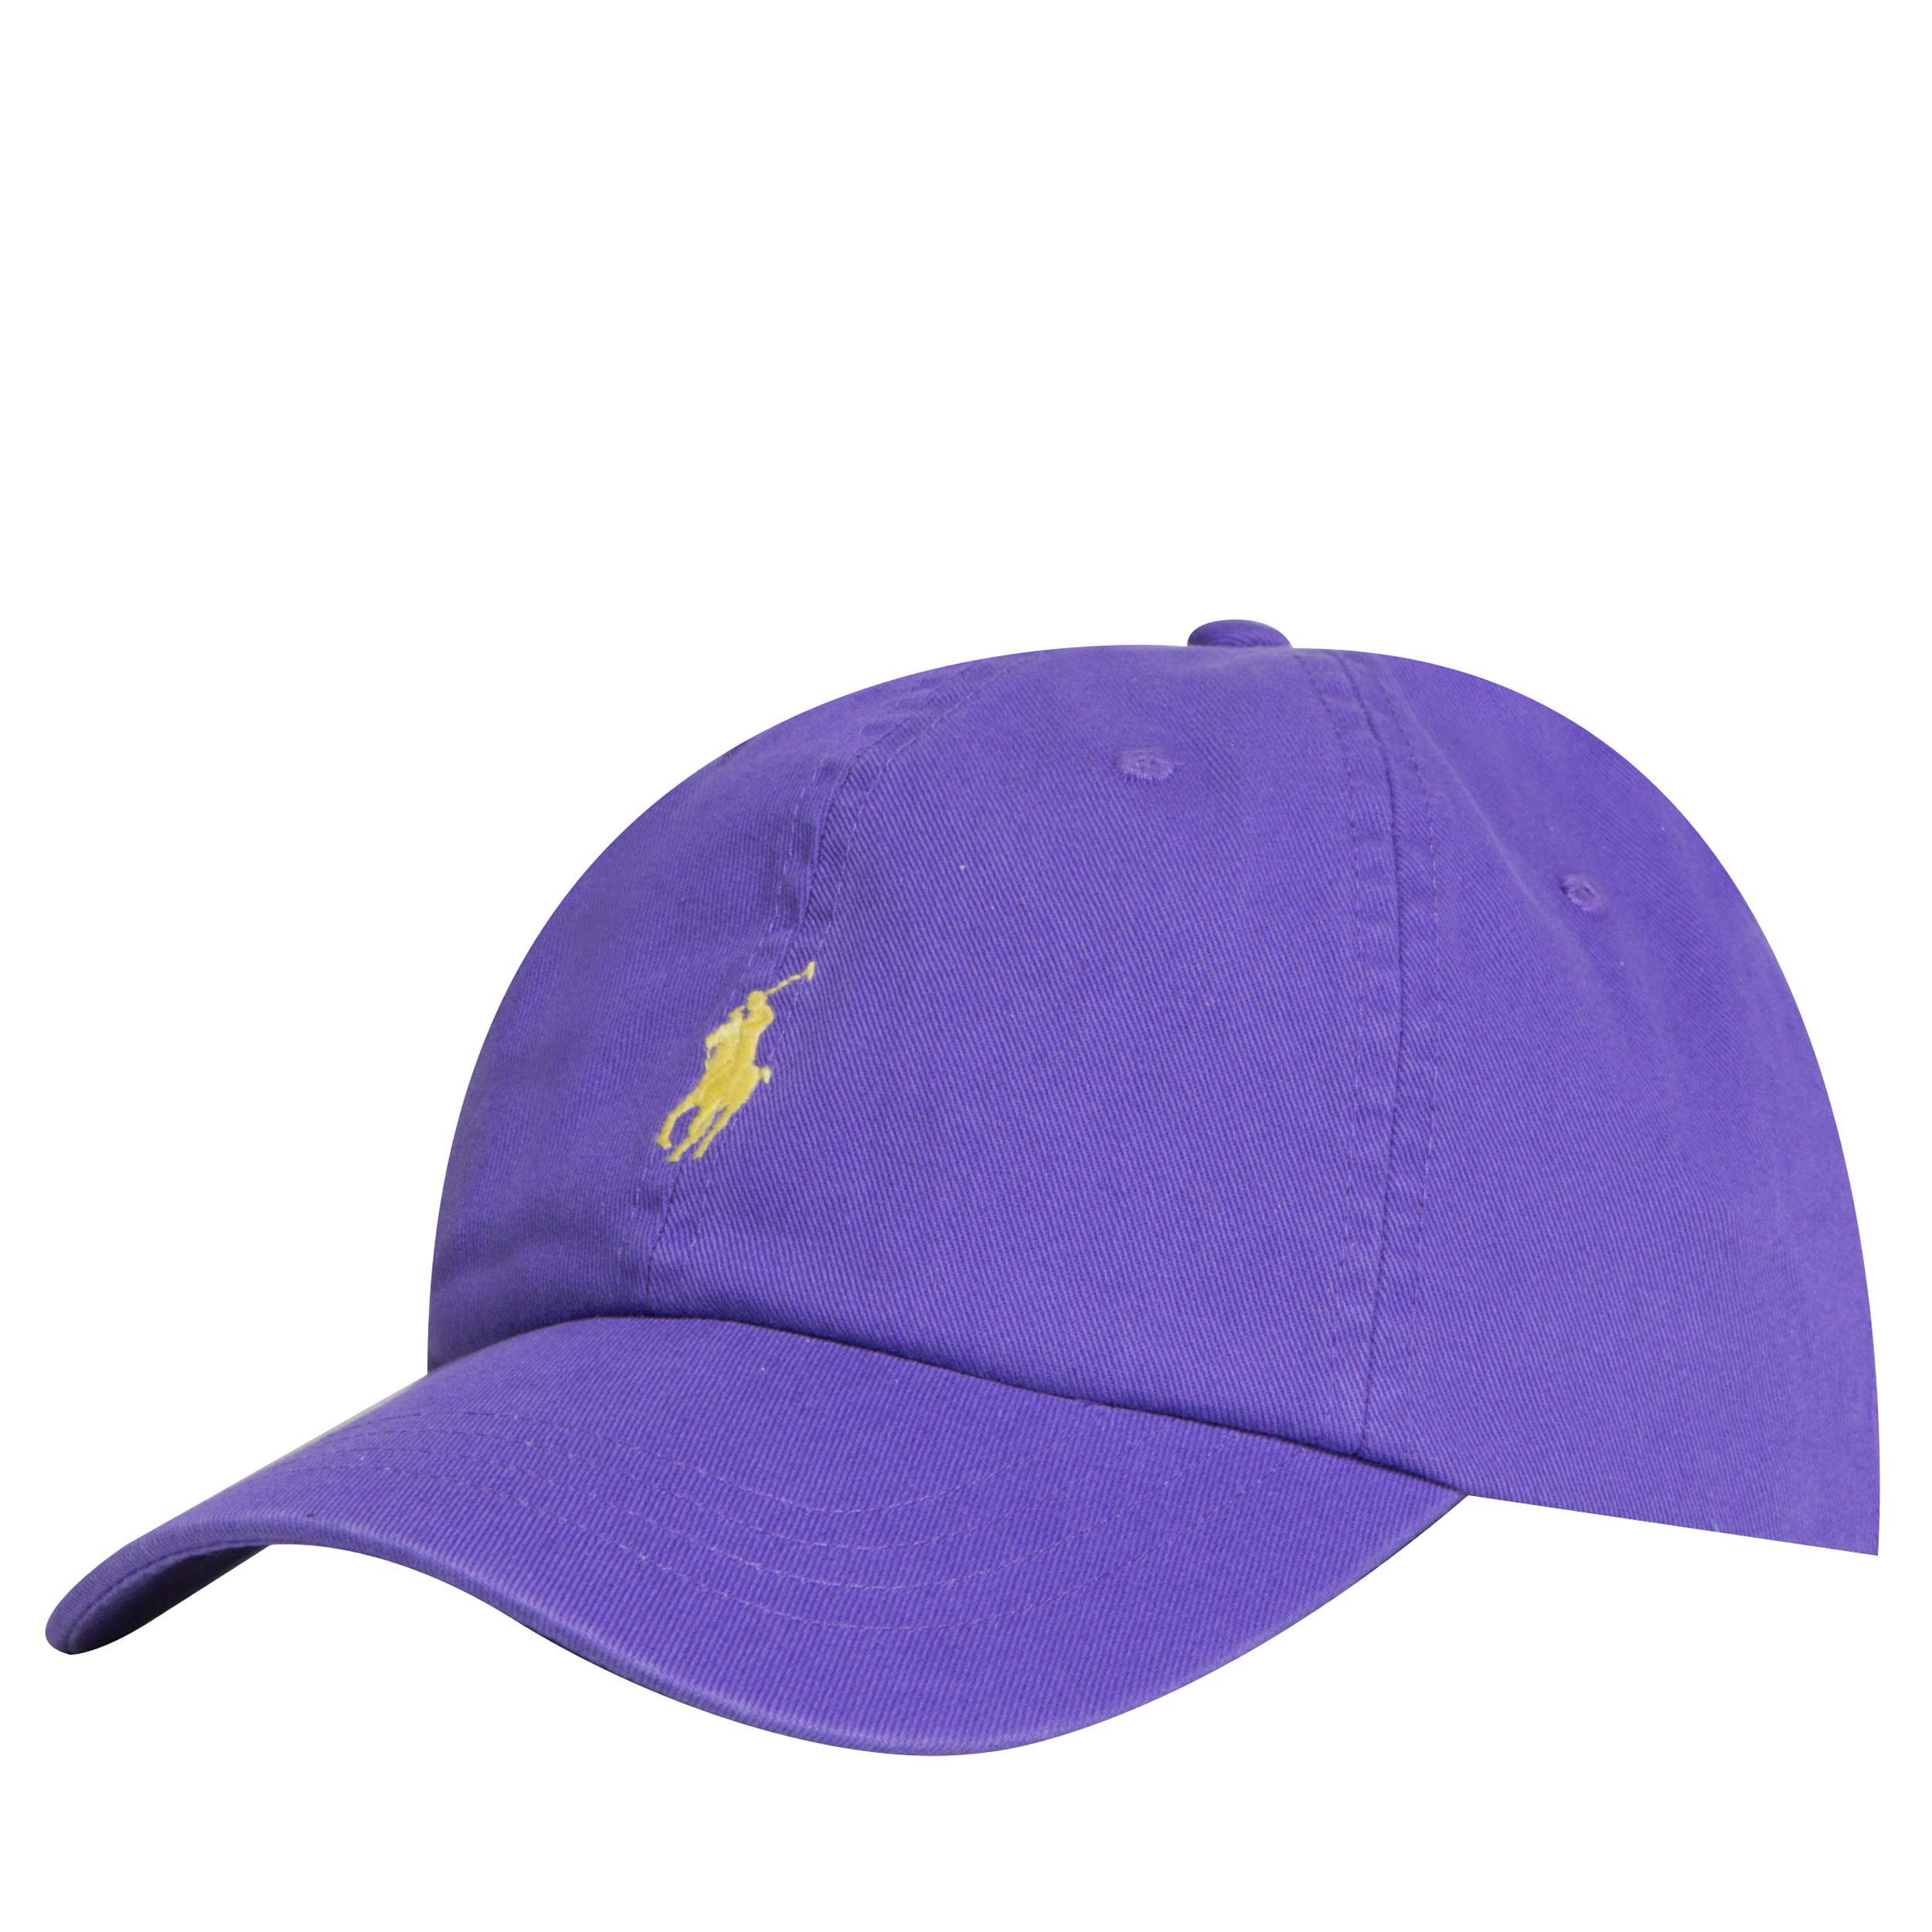 Aprender acerca 49+ imagen polo ralph lauren cap purple